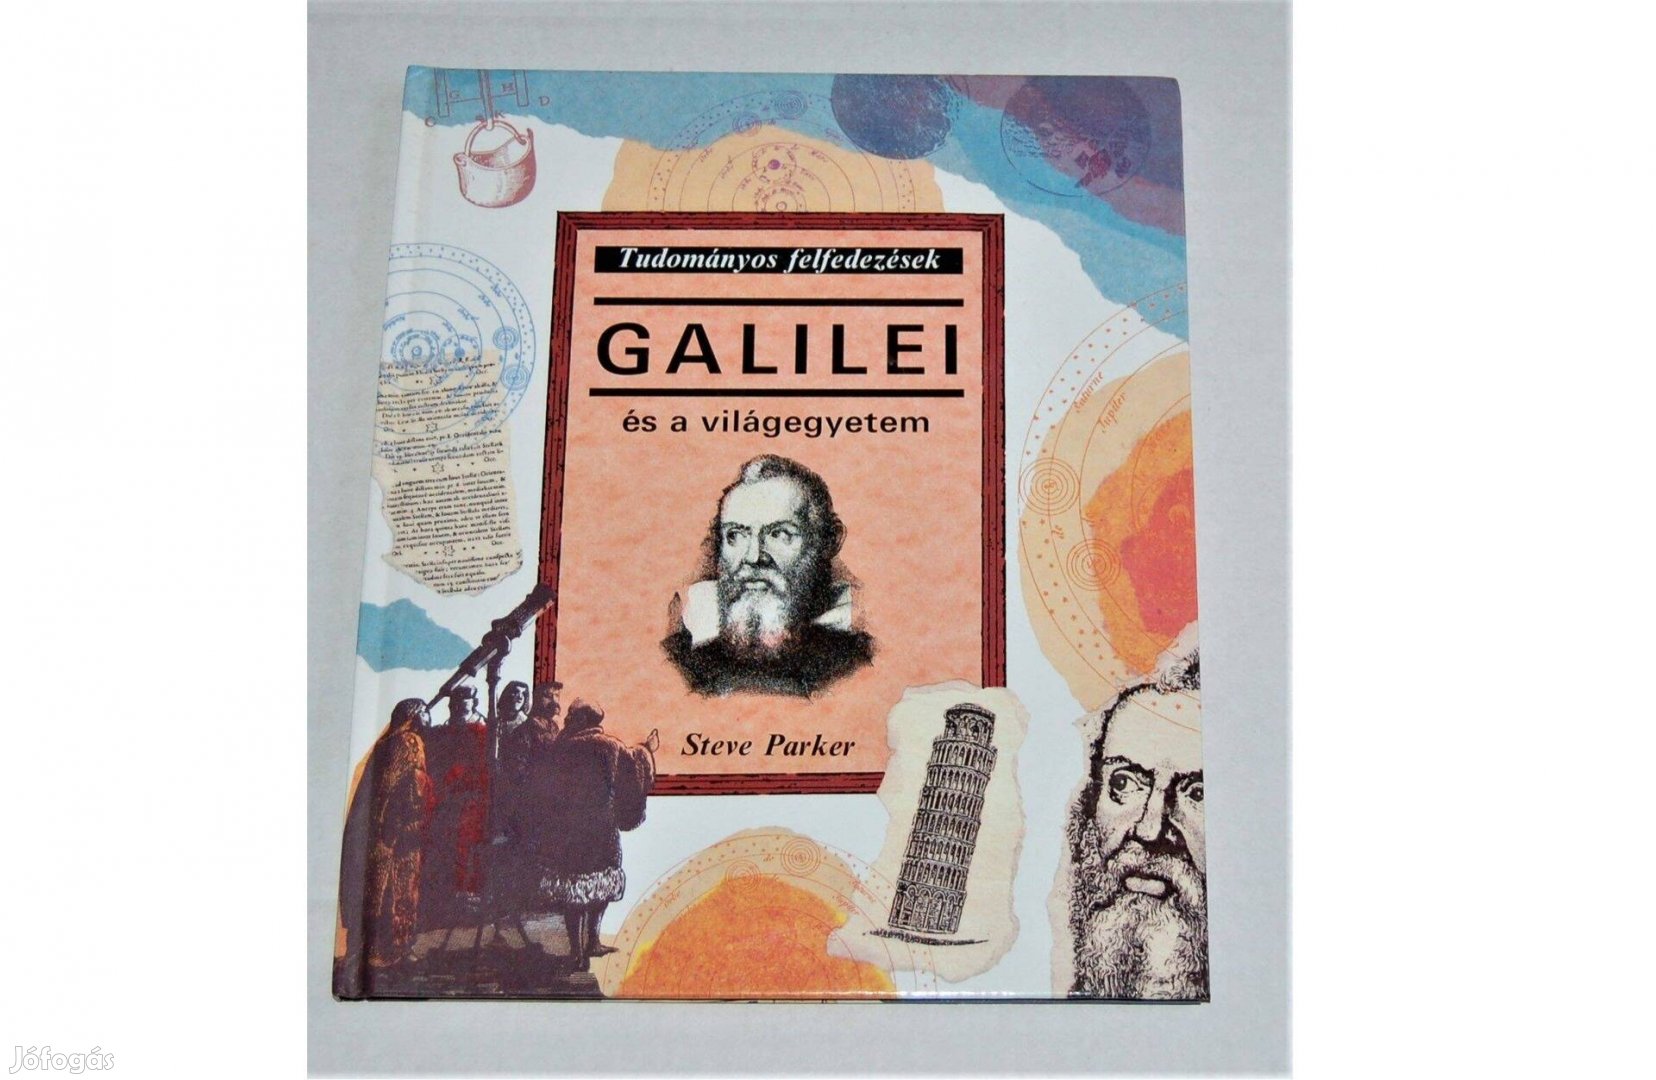 Galilei és a világegyetem - Tudományos felfedezések sorozat - Magvető